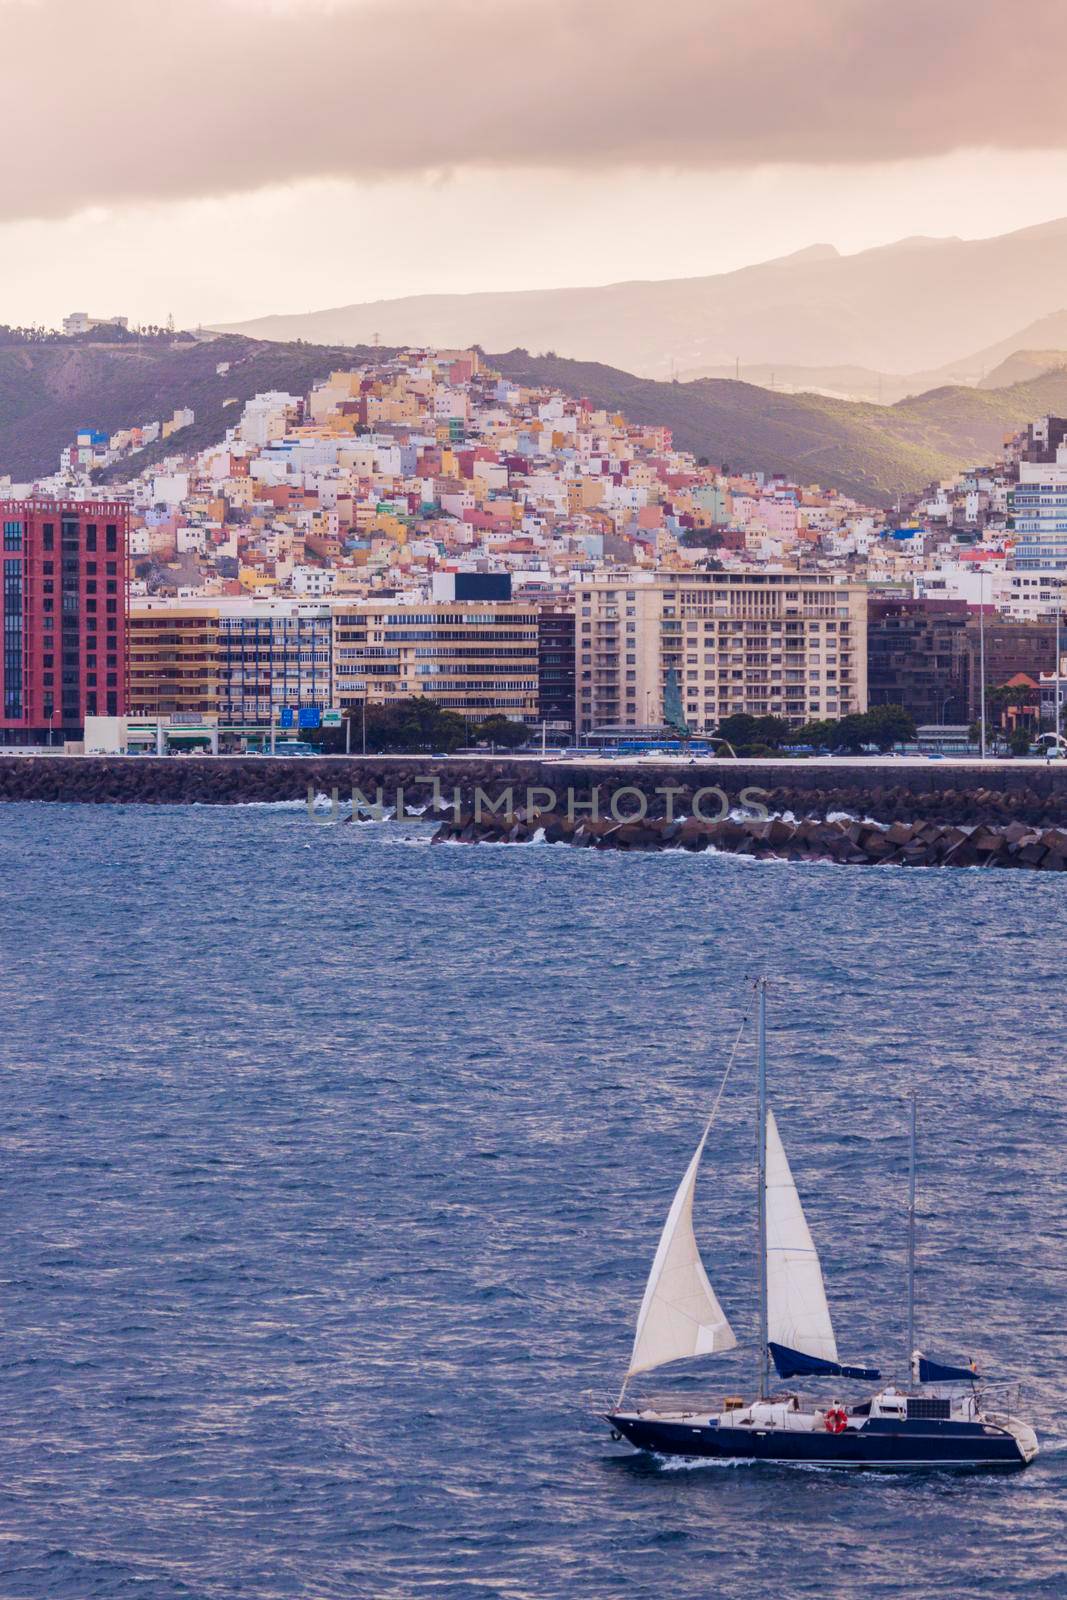 Panorama of Las Palmas from the sea. Las Palmas, Gran Canaria, Canary Islands, Spain.